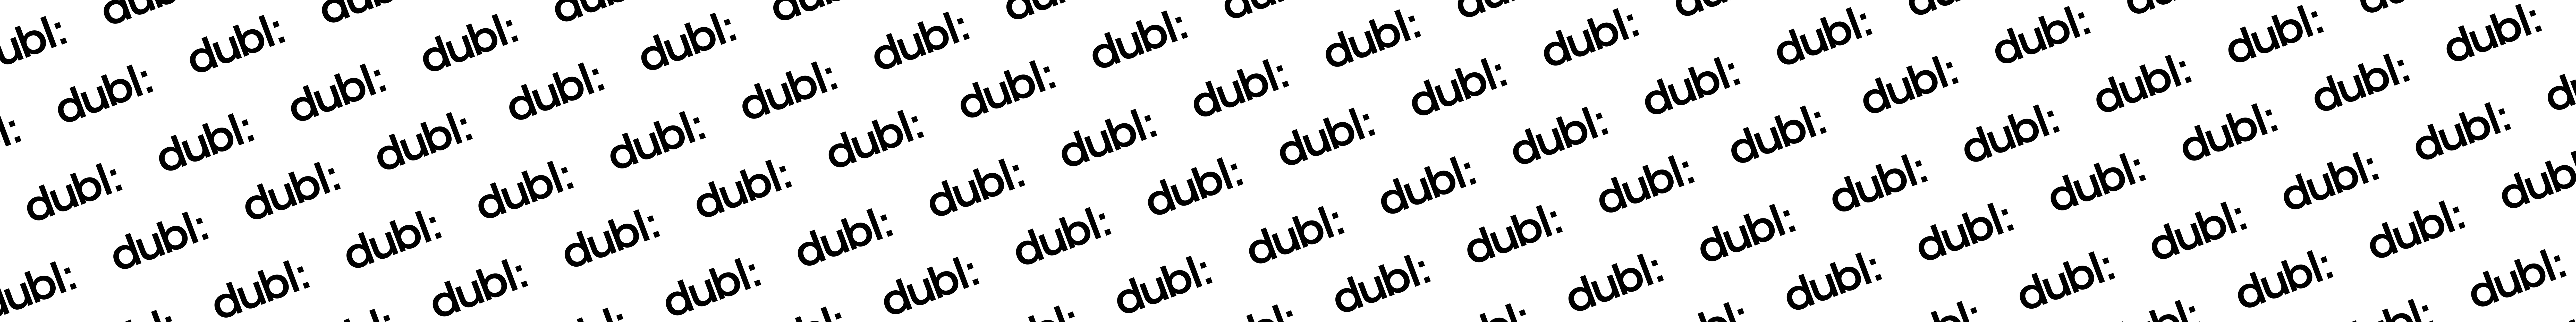 Dubl Design Studio's profile banner